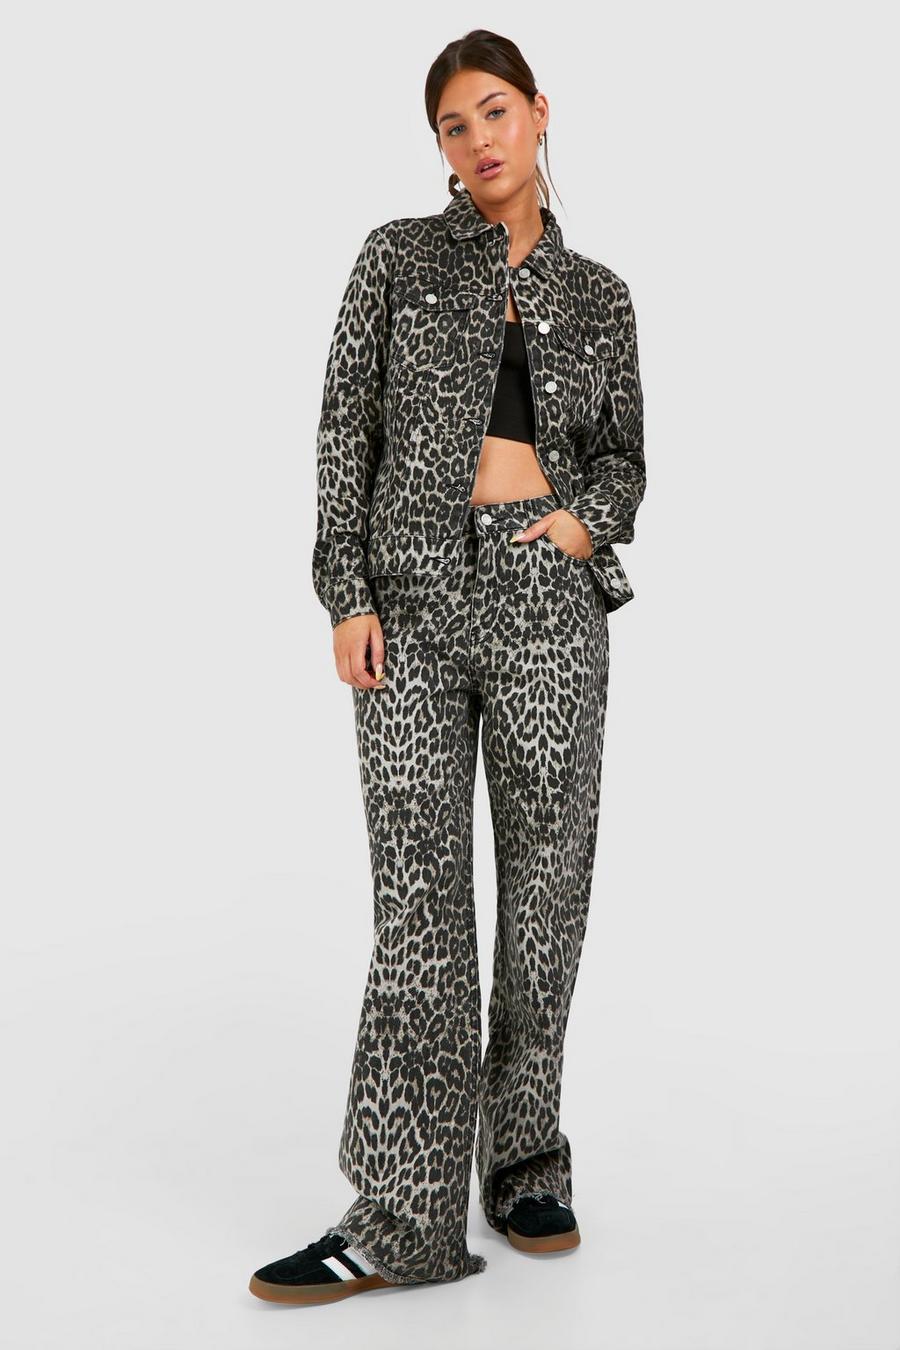 Jeansjacke mit Leopardenprint, Brown